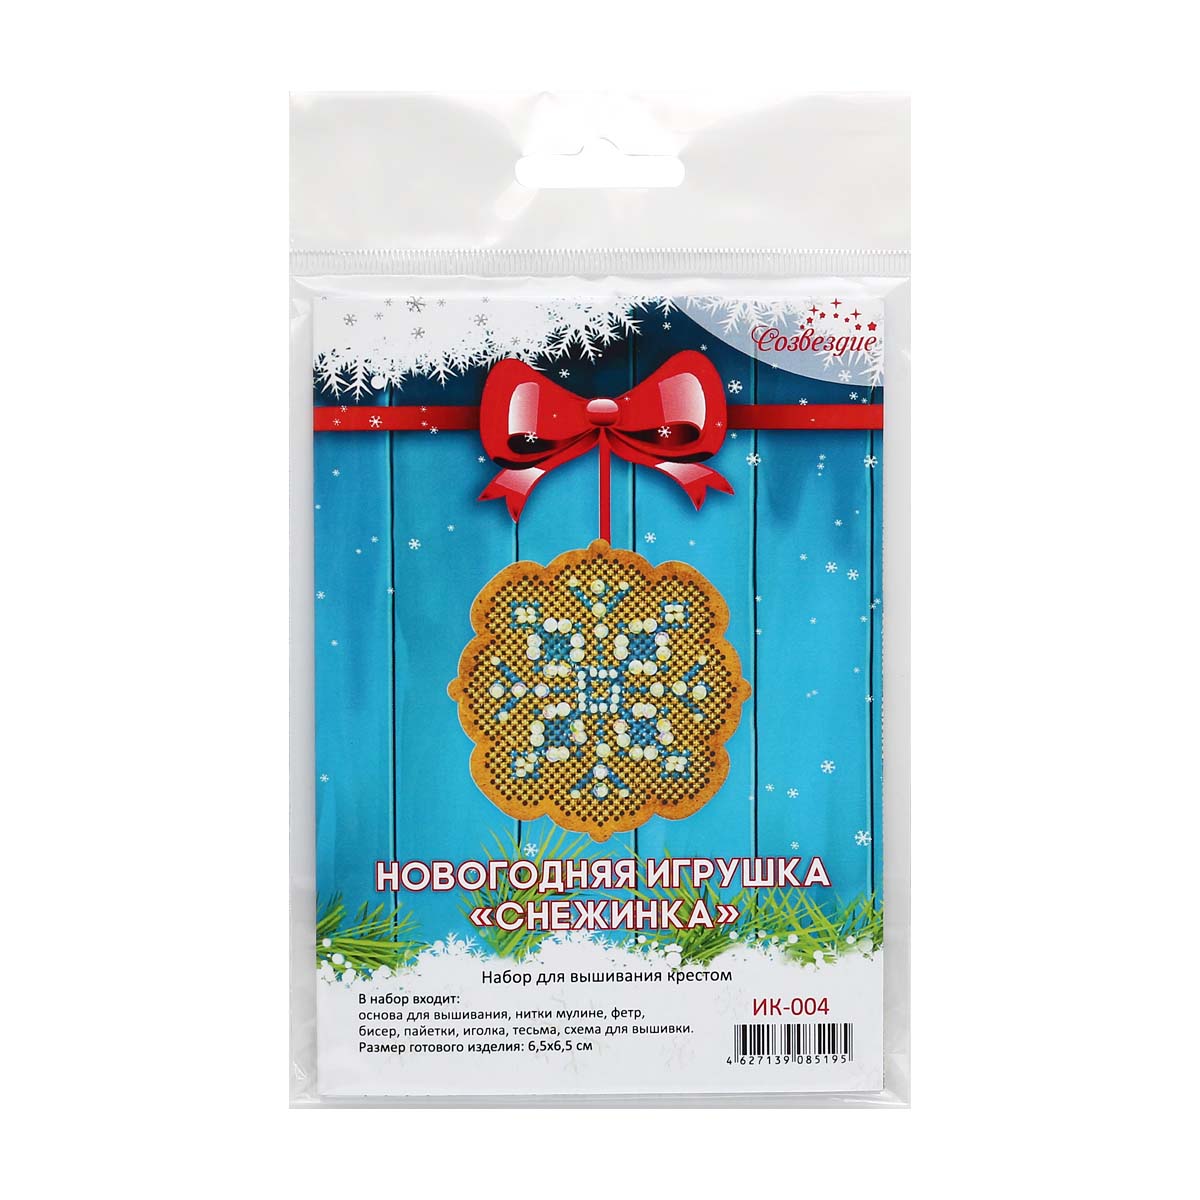 Набор для вышивания крестом Созвездие ИК-004 Новогодняя игрушка Снежинка 6*6см - фото 3